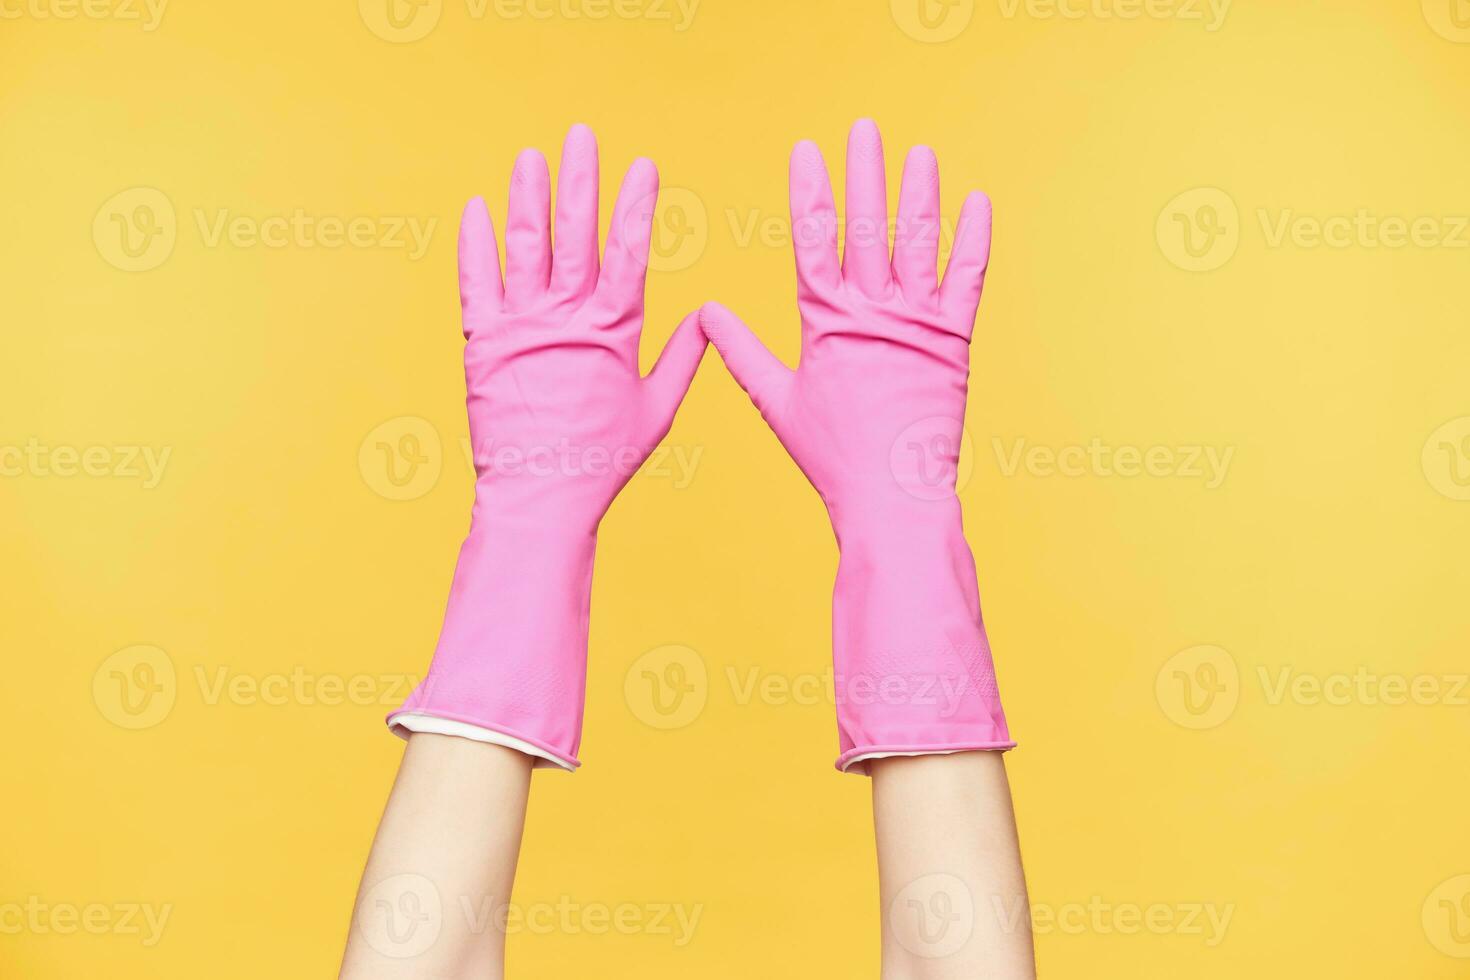 frente ver de elevado manos en rojo caucho guantes siendo aislado en contra naranja fondo, acuerdo todas dedos por separado. humano manos y cuerpo concepto foto